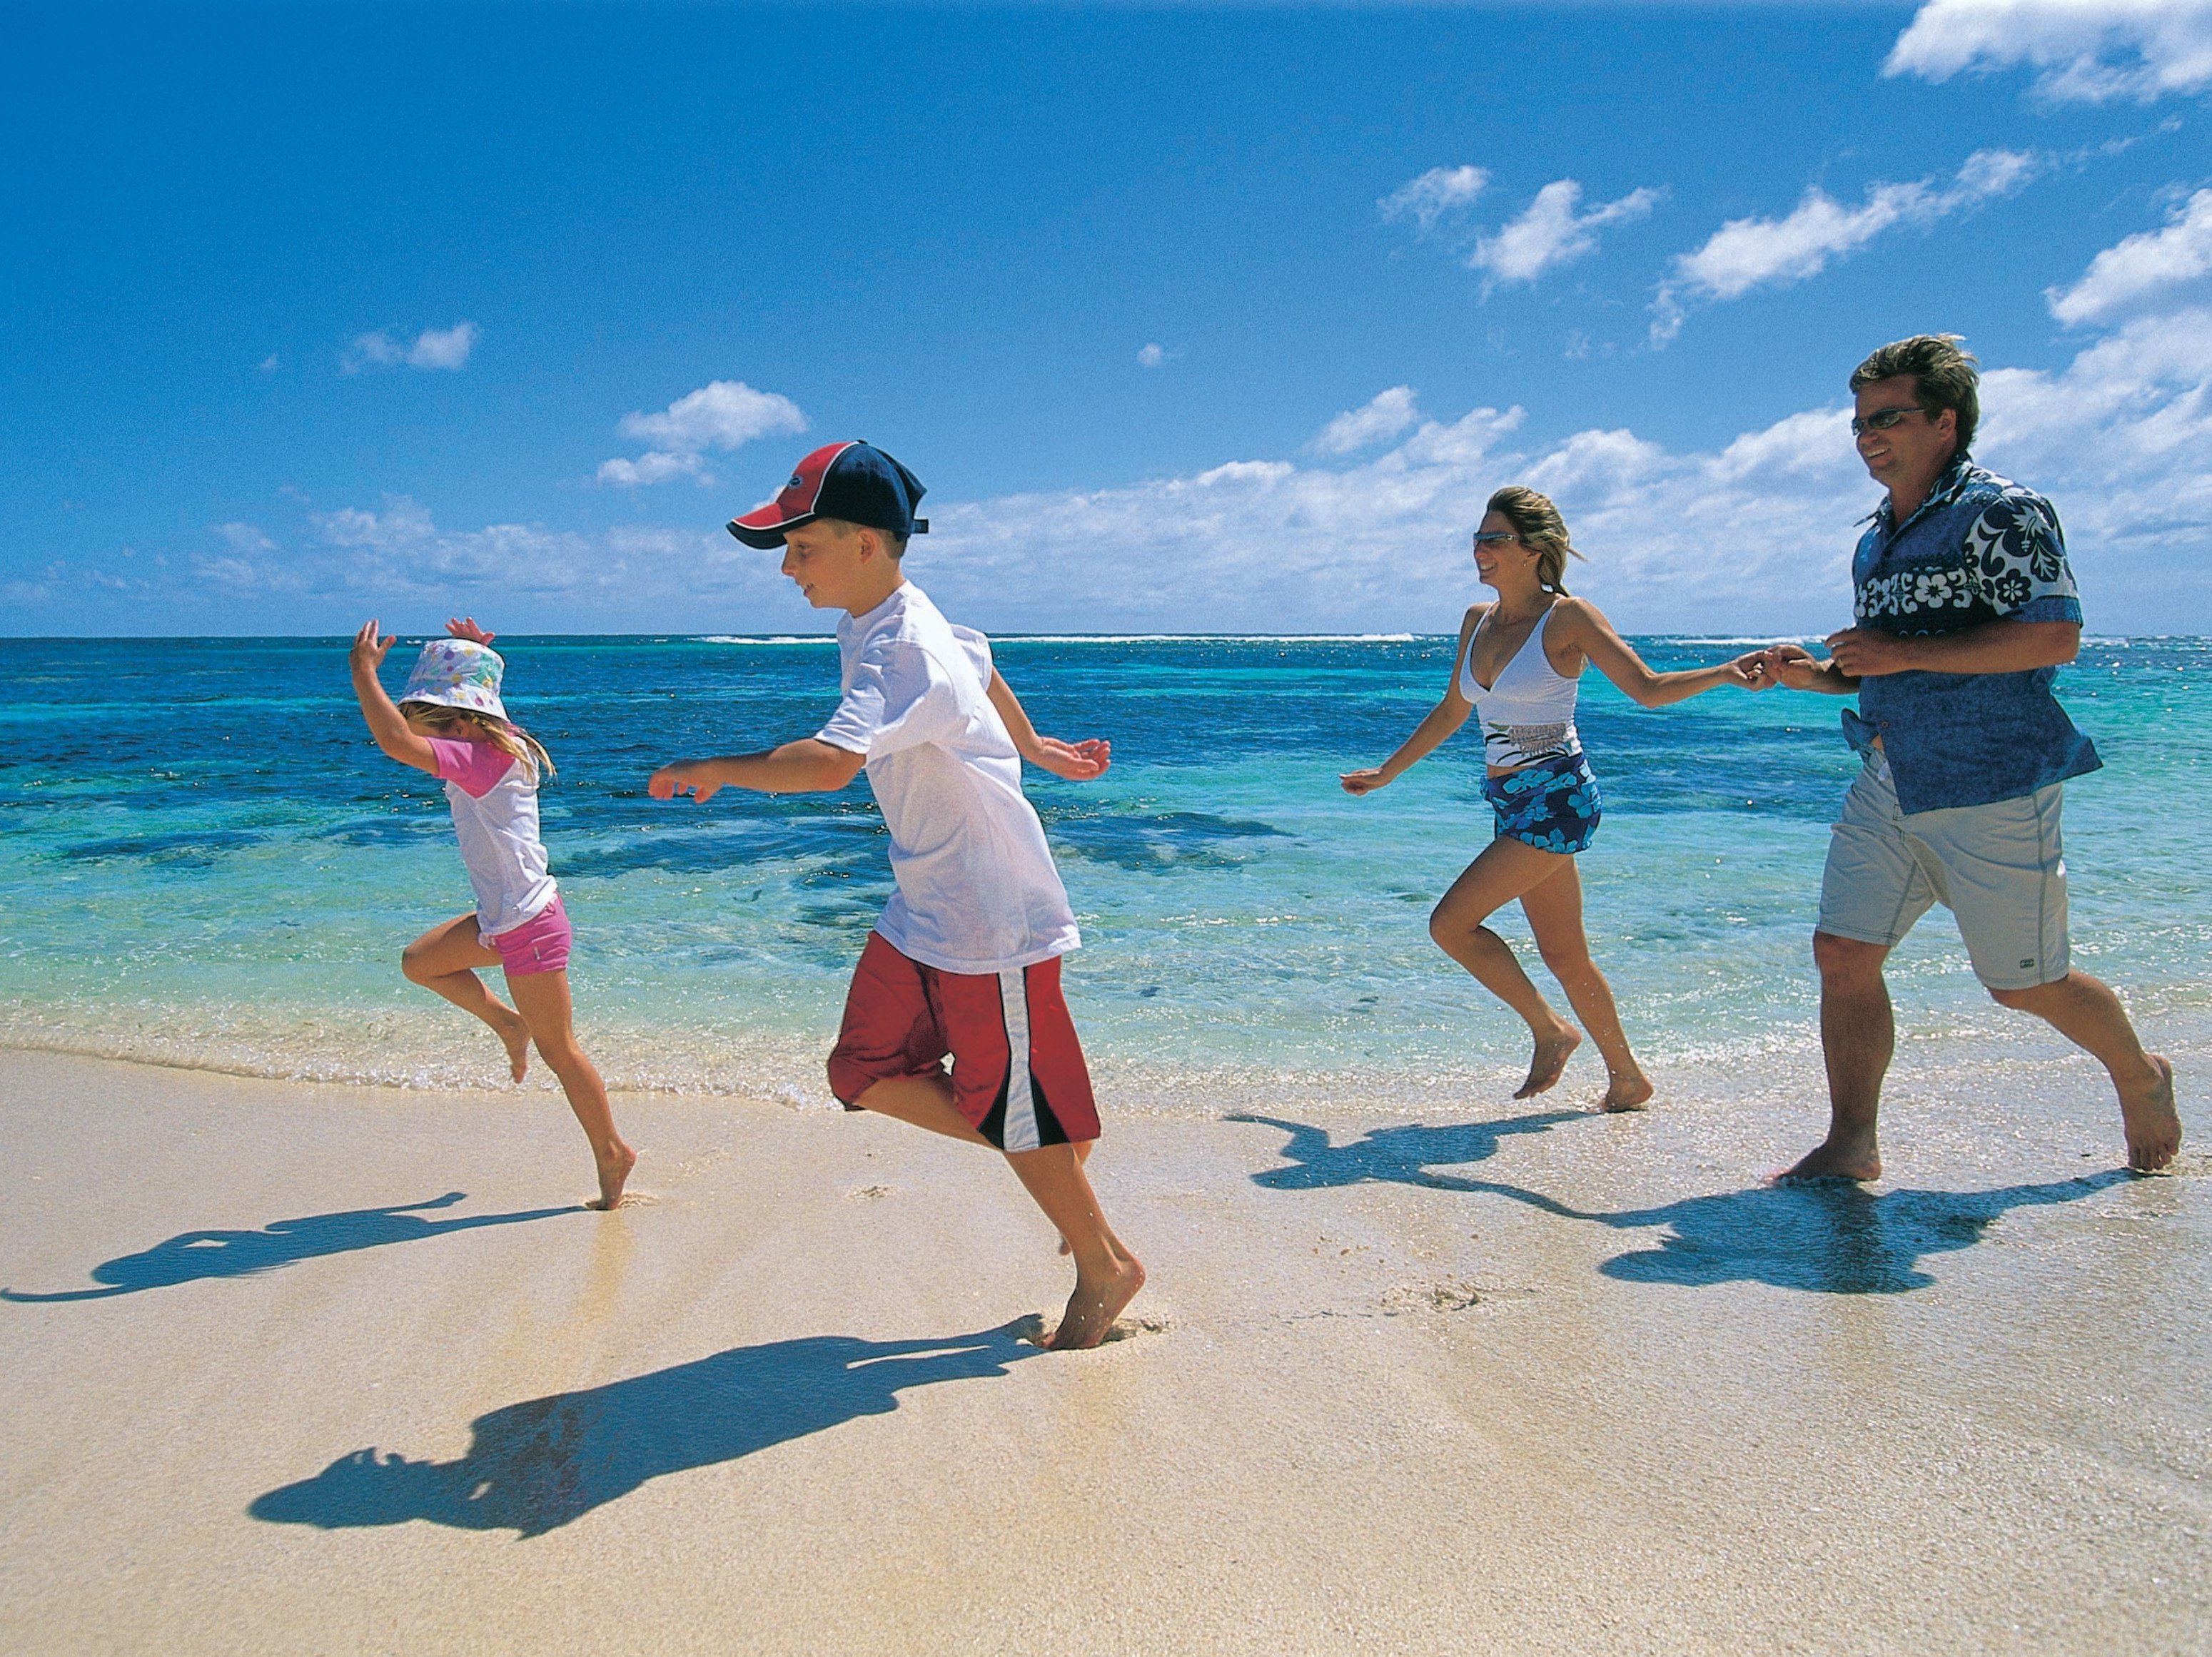 Fernreisen mit Kindern - Trend zur längeren Familienreise - Familienurlaub an der Südsee